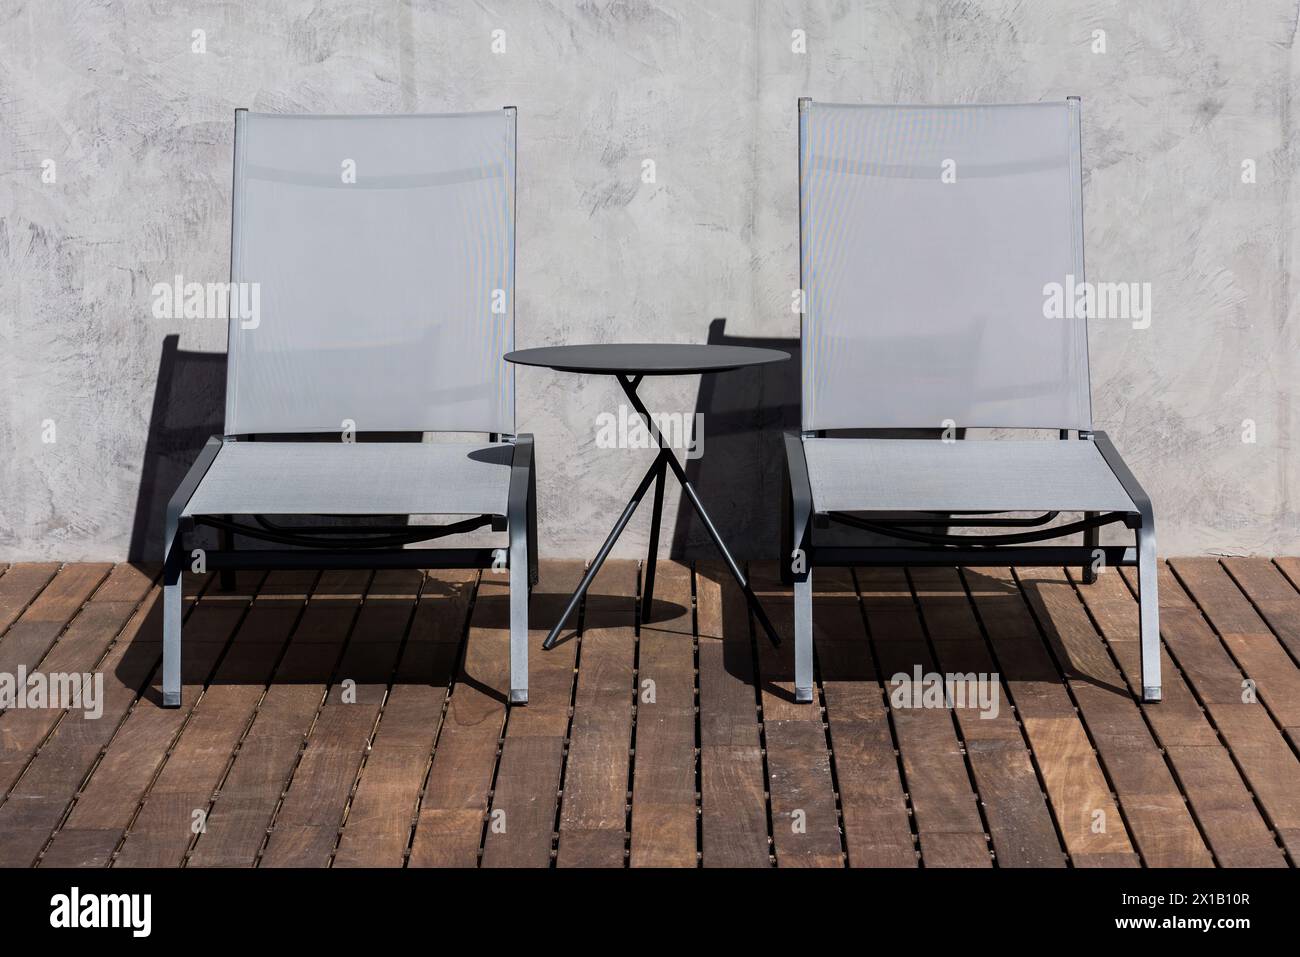 Une paire de chaises longues élégantes et noires avec sièges en maille transparente sont positionnées sur une terrasse en bois, accompagnées d'une petite table d'appoint ronde Banque D'Images